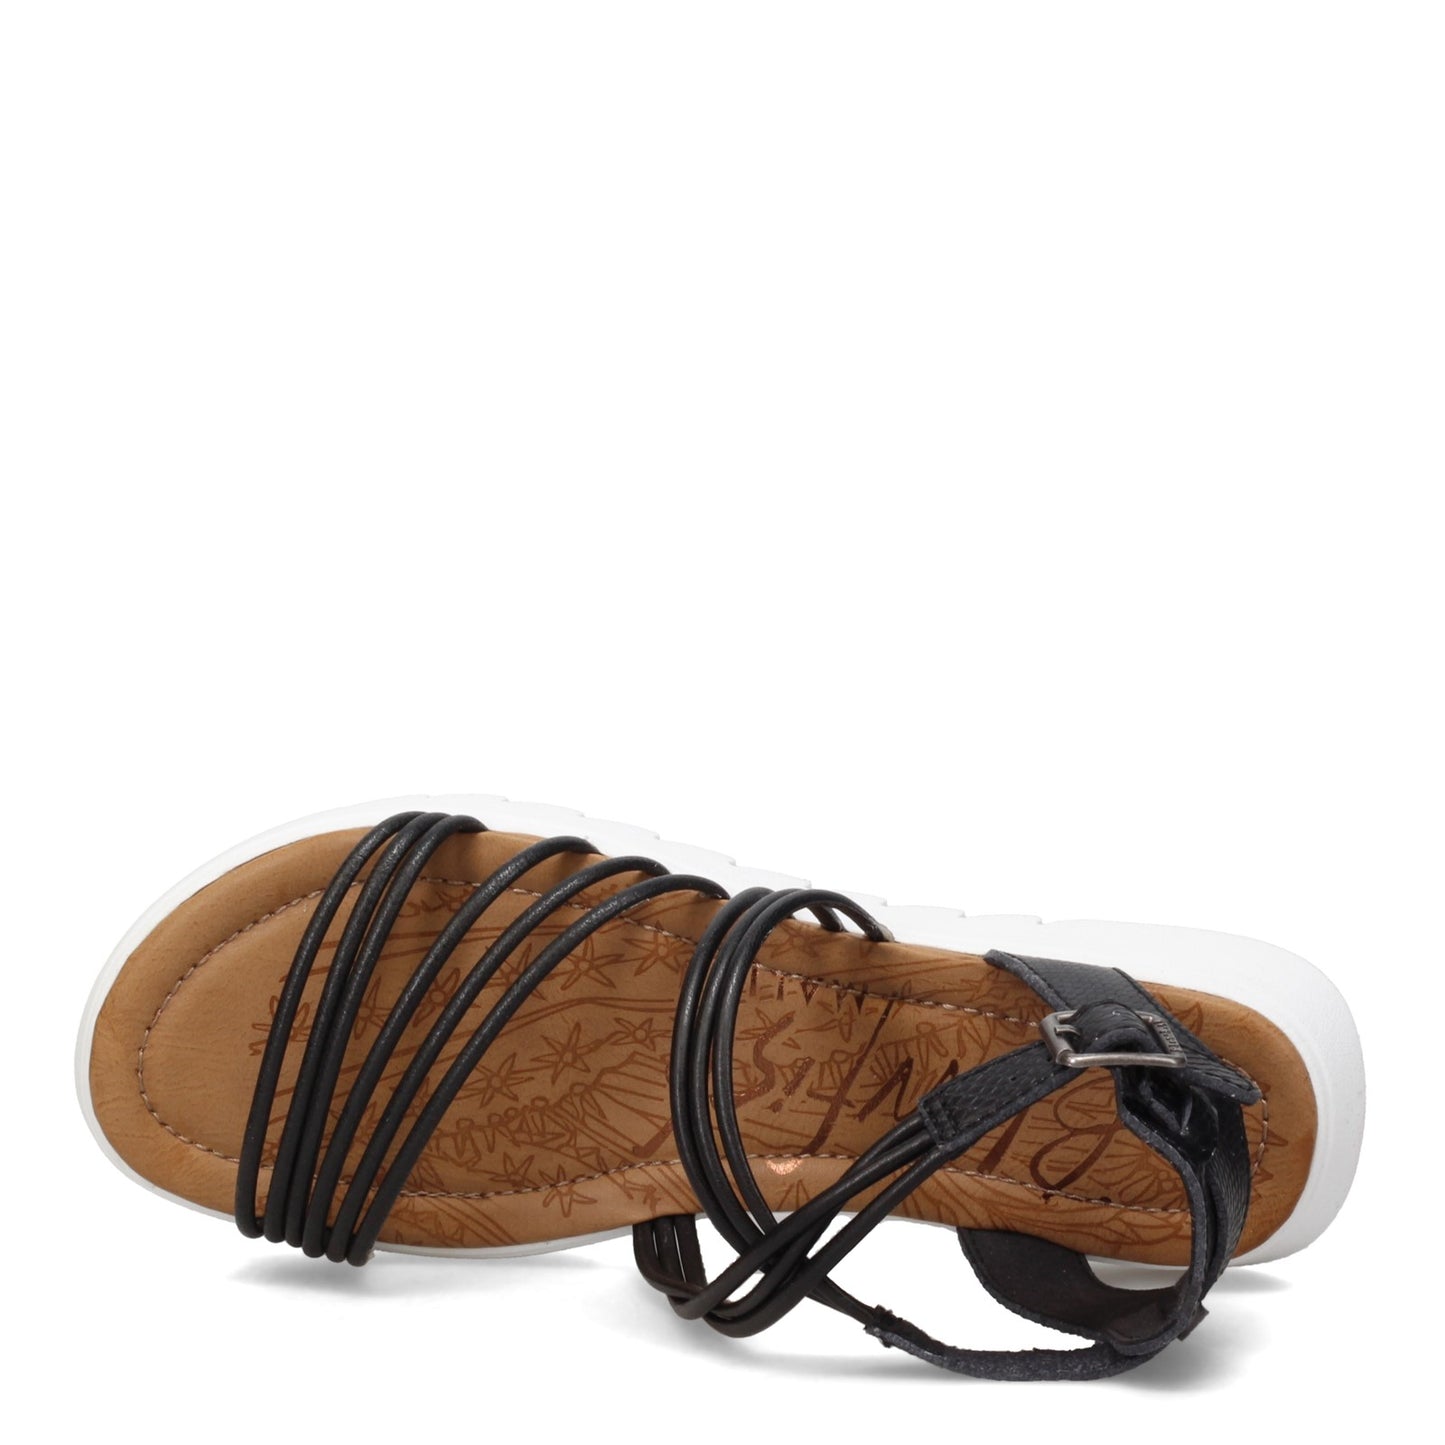 Peltz Shoes  Women's Blowfish Malibu Triten Sandal BLACK BF-9538-163